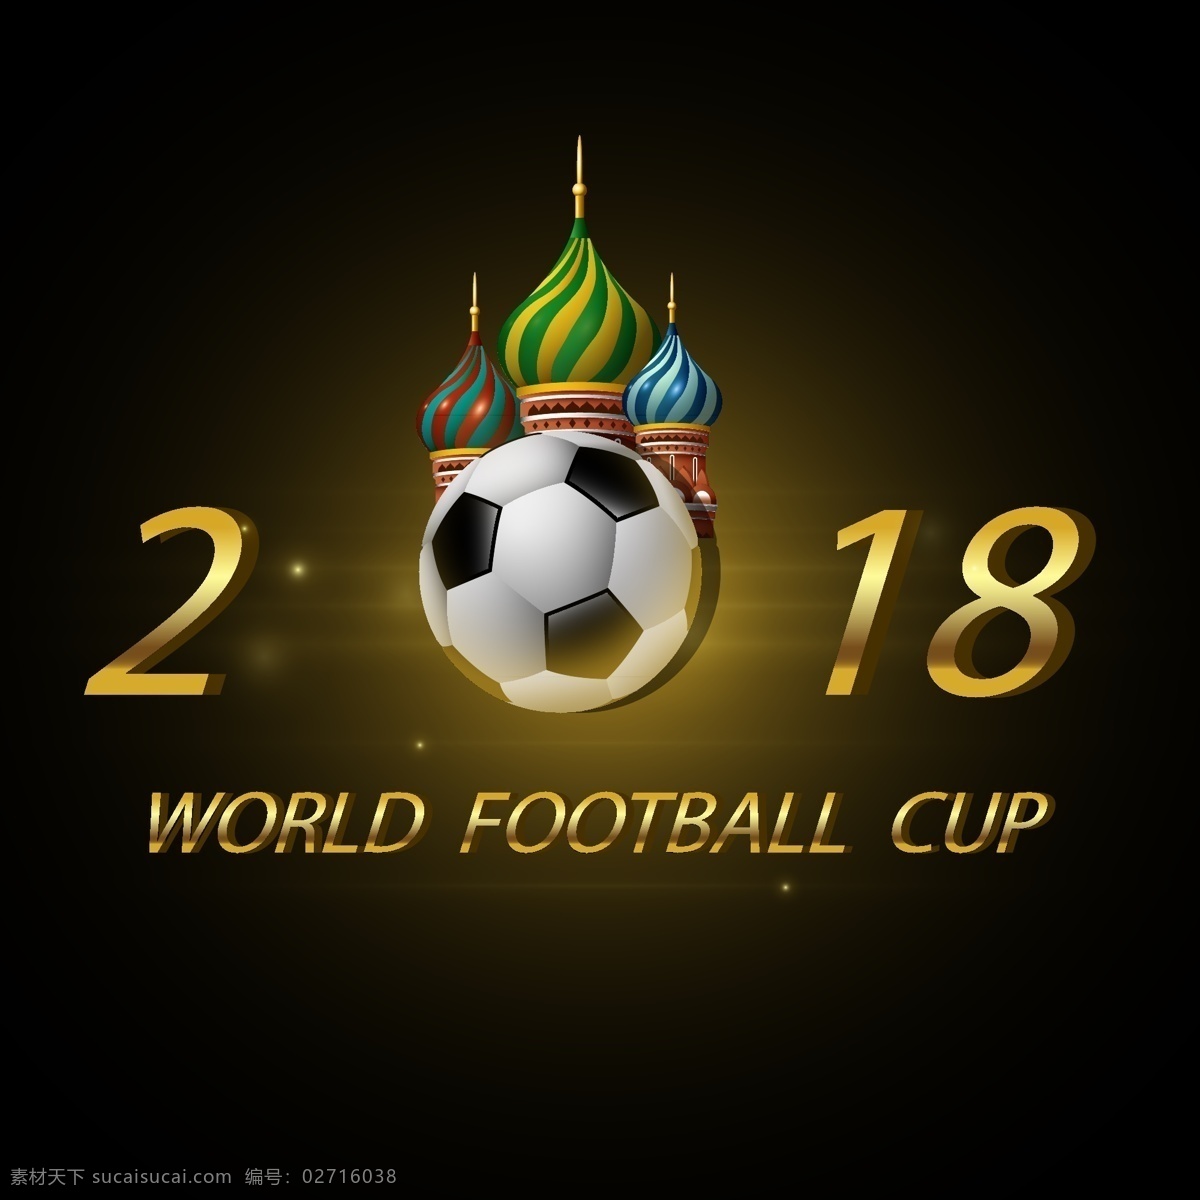 矢量 世界杯 数字 足球赛 元素 矢量素材 金色 建筑 足球 俄罗斯 欧洲杯 卡通 比赛